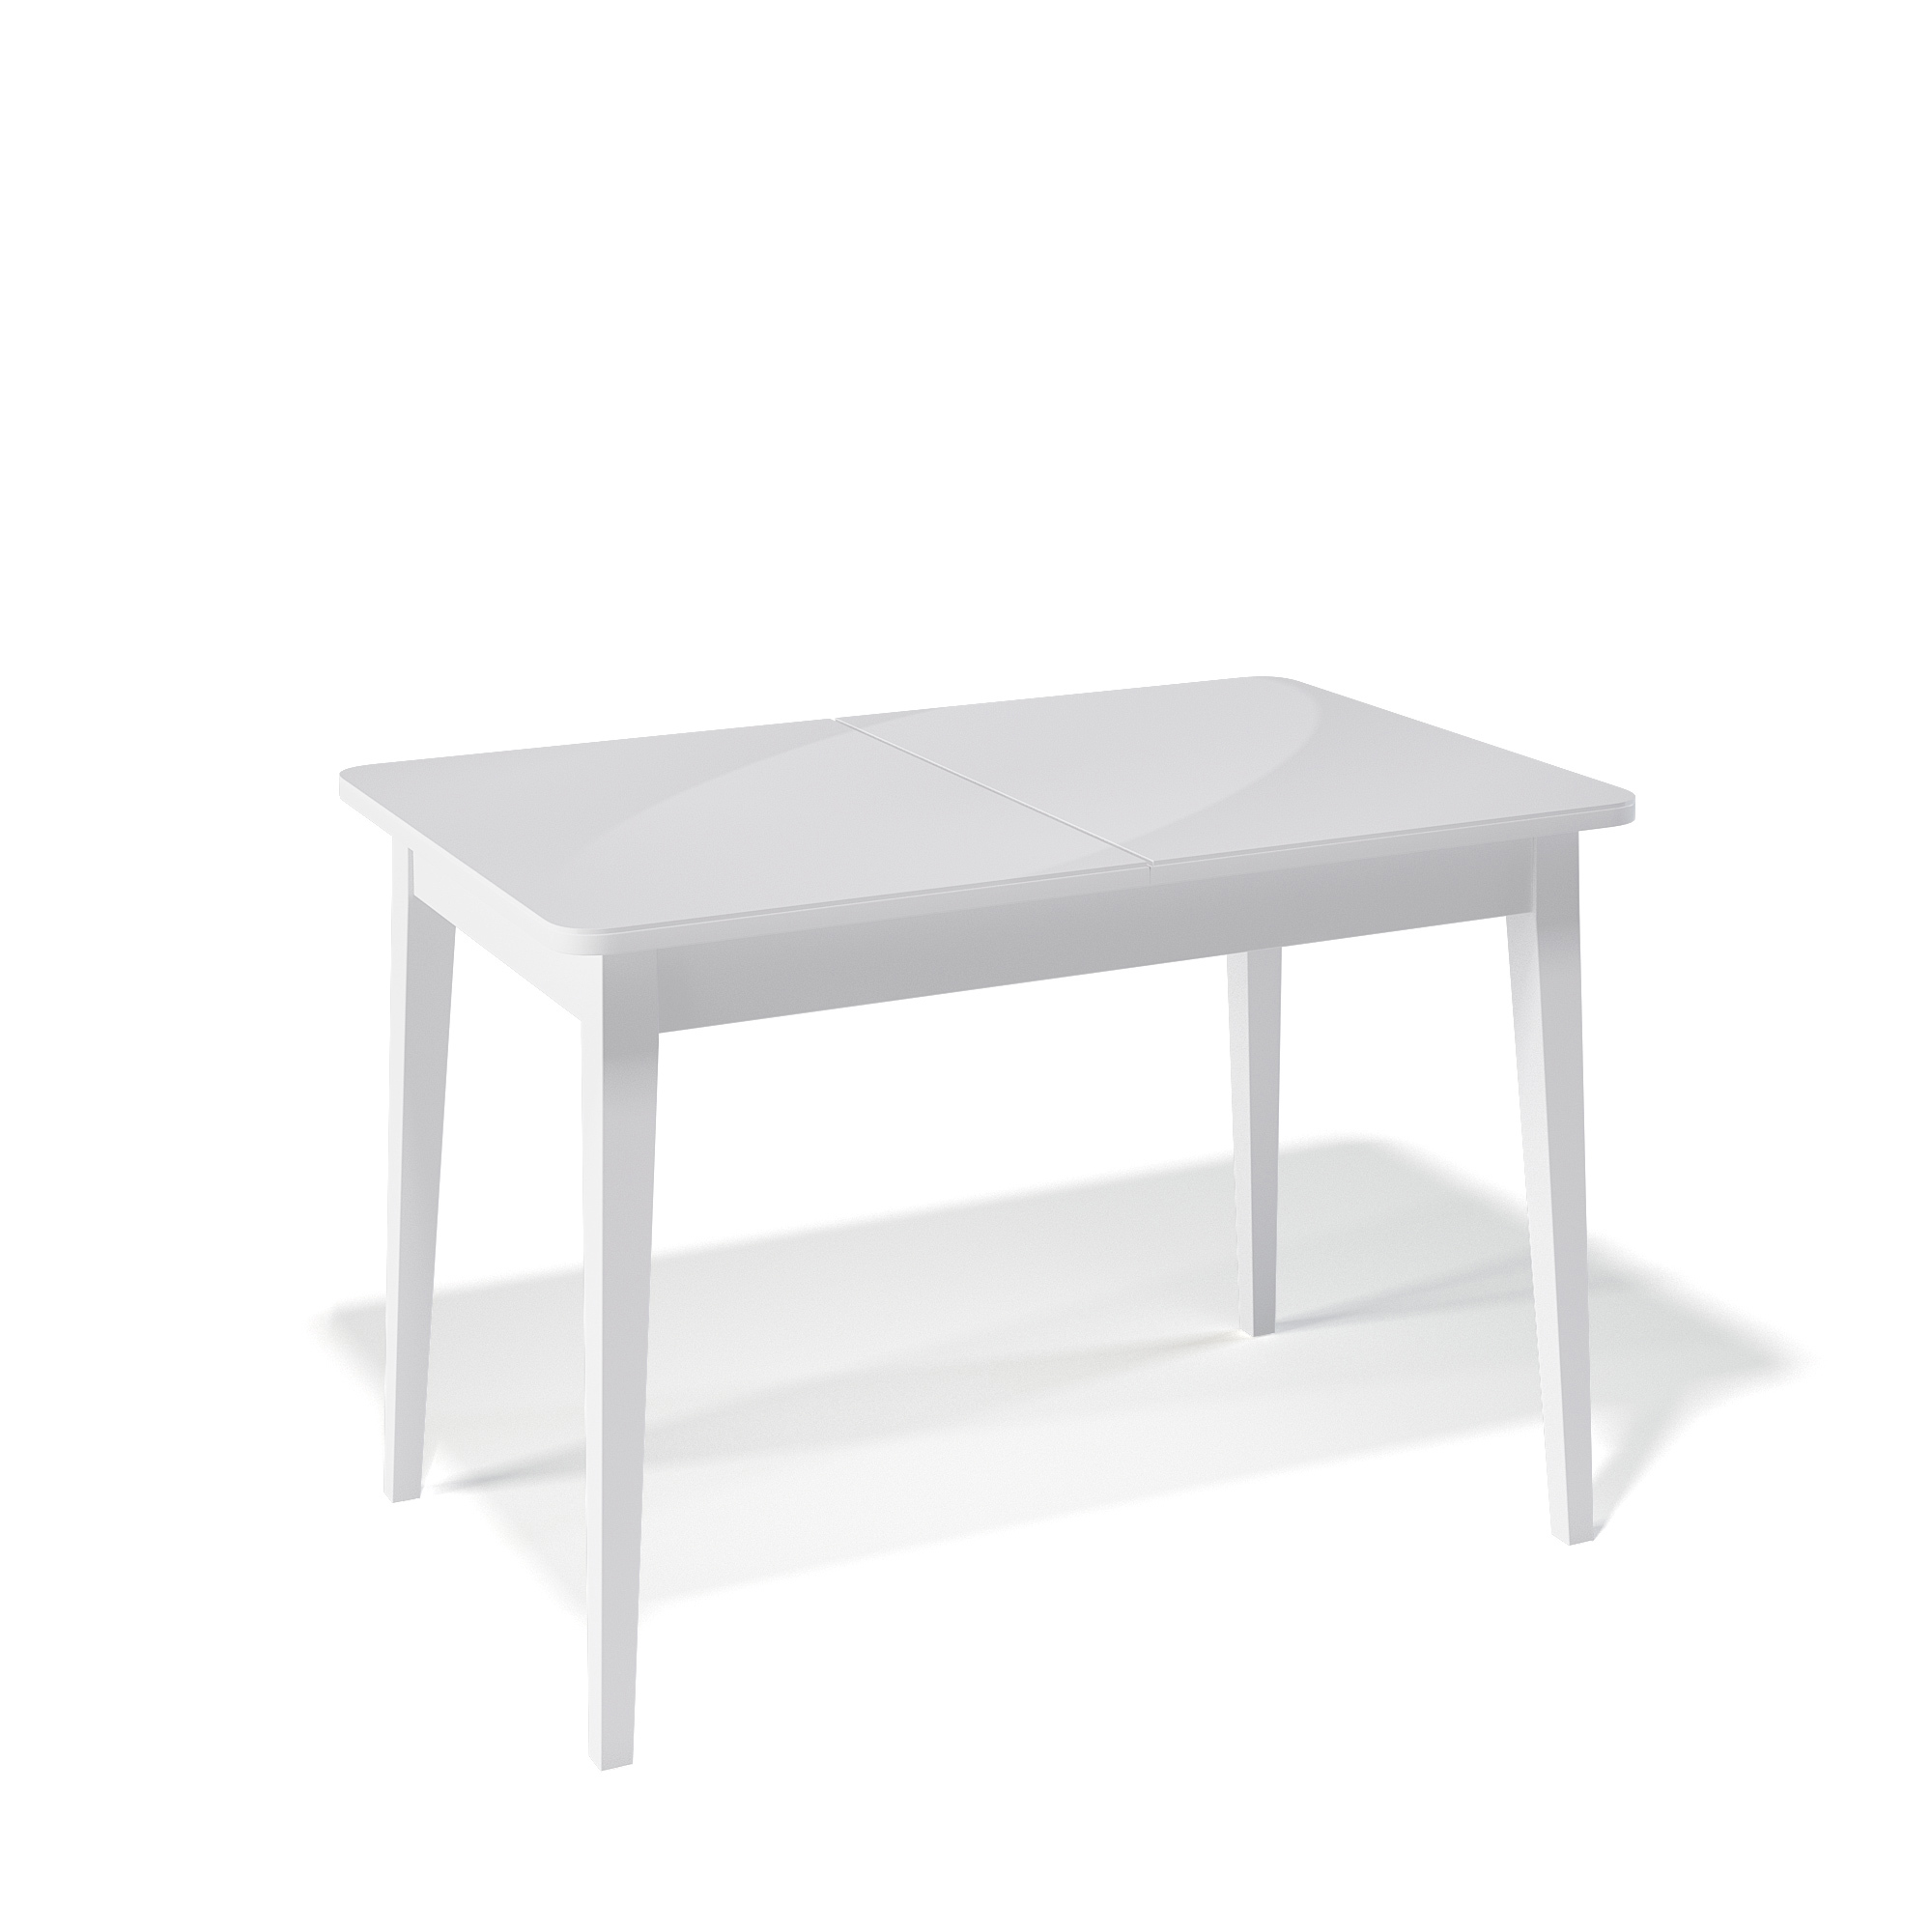 91053994 Кухонный стол прямоугольный 330759 110-150x110x76 см ЛДСП цвет белый M/C STLM-0459639 KENNER